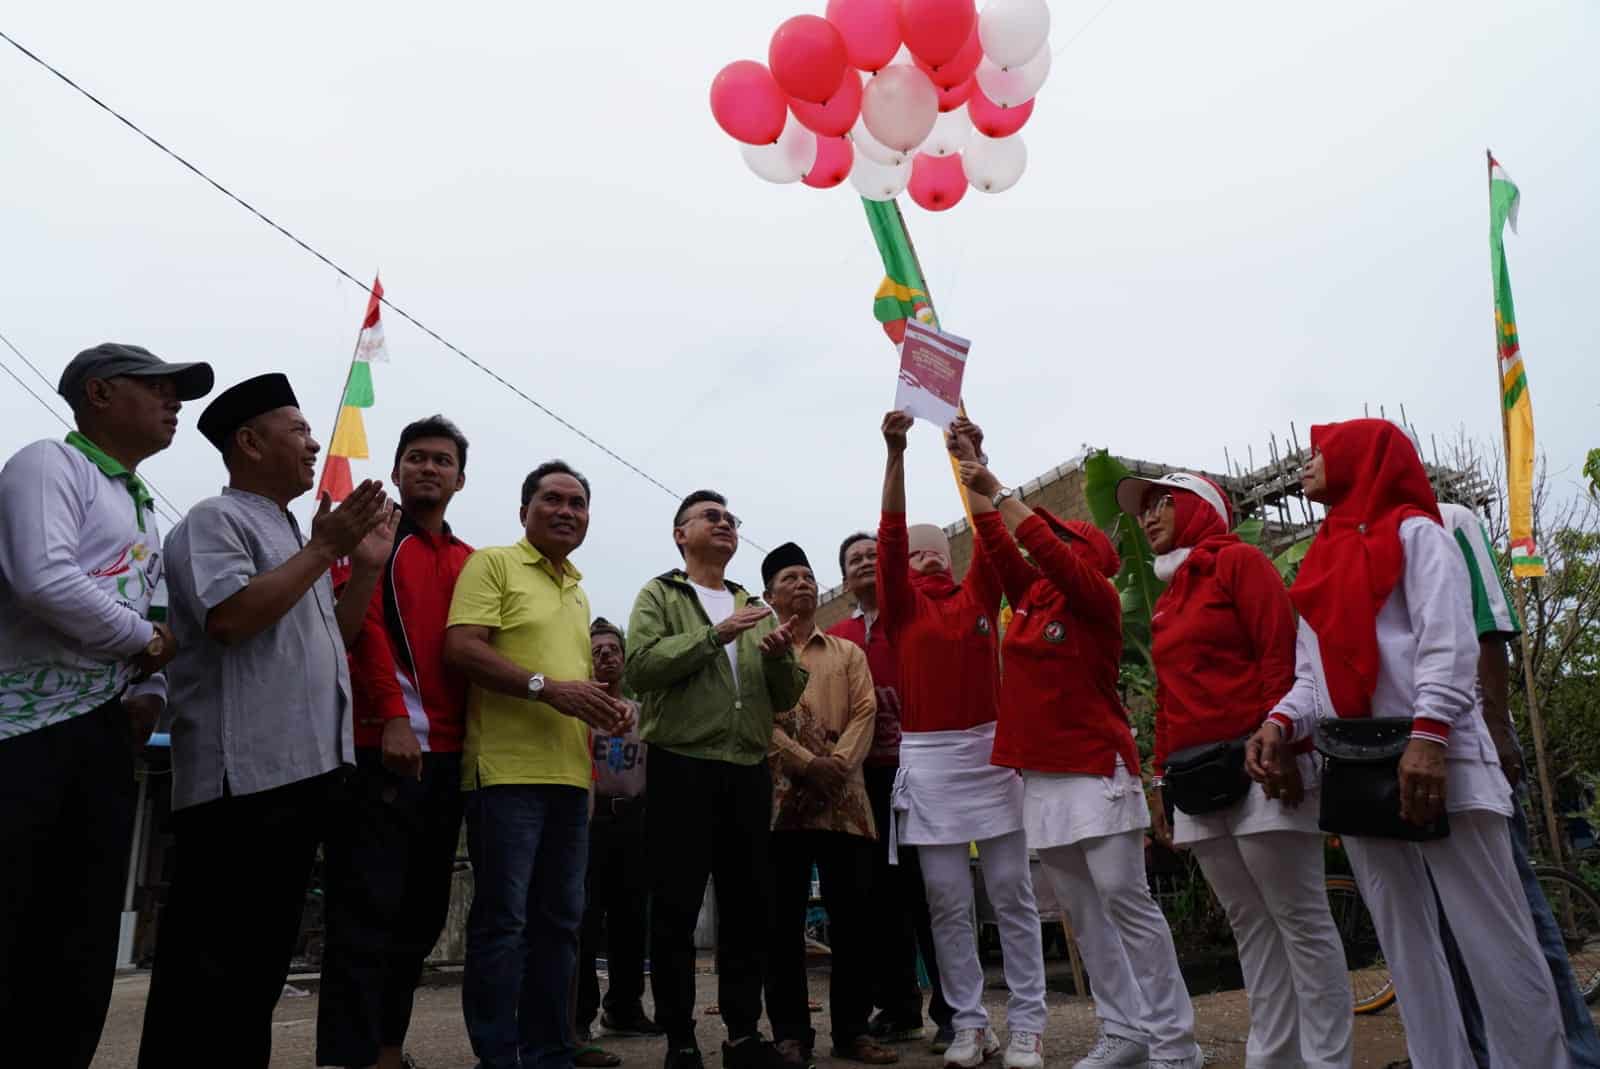 Pelepasan balon menandai dimulainya Semarak HUT ke-77 Kemerdekaan RI di Kelurahan Saigon Kecamatan Pontianak Timur. (Prokopim For KalbarOnline.com)